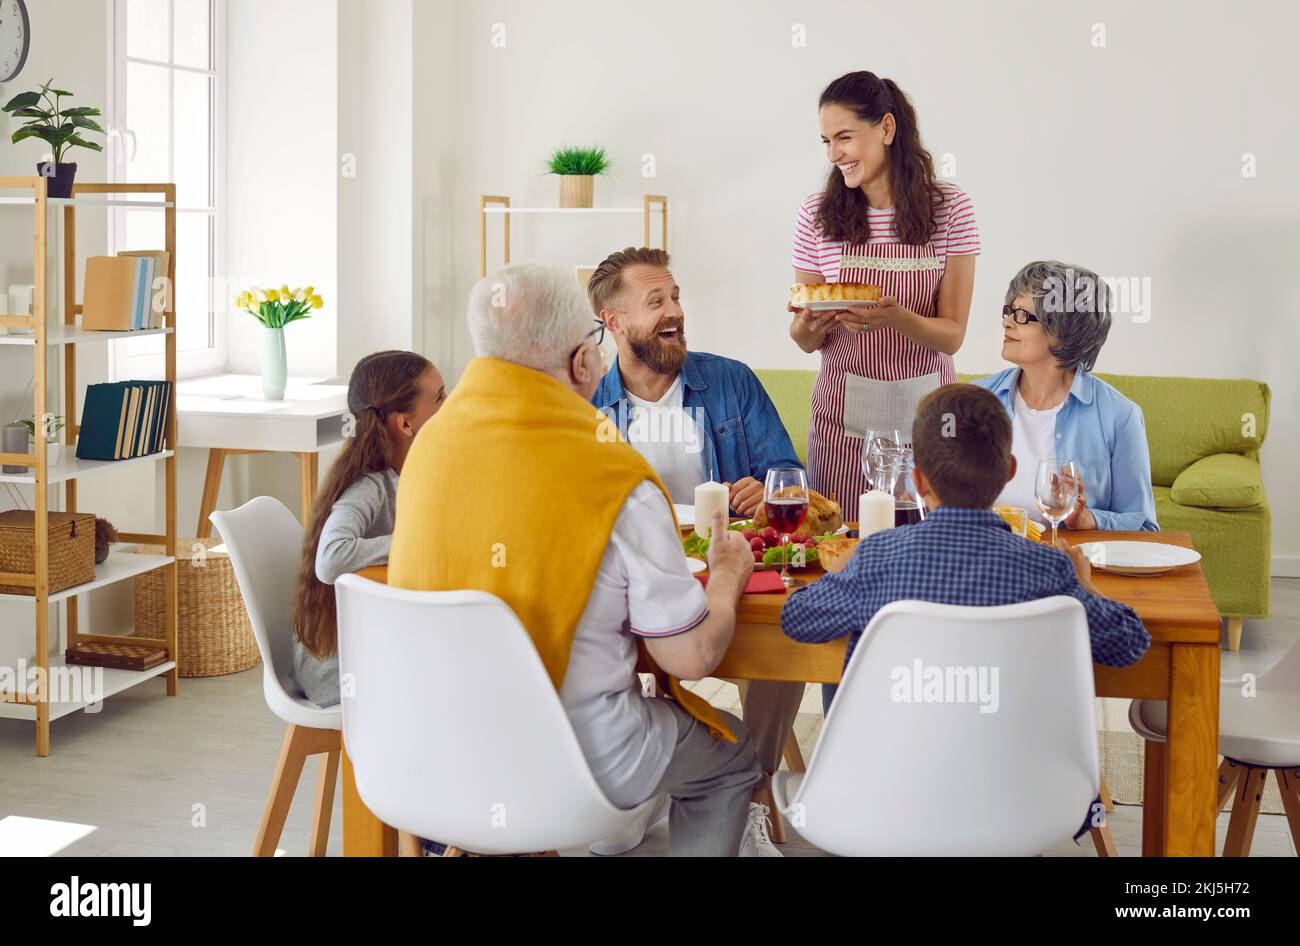 La feliz familia multi-generacional está celebrando el agradecimiento en una mesa festiva con deliciosa comida. Foto de stock